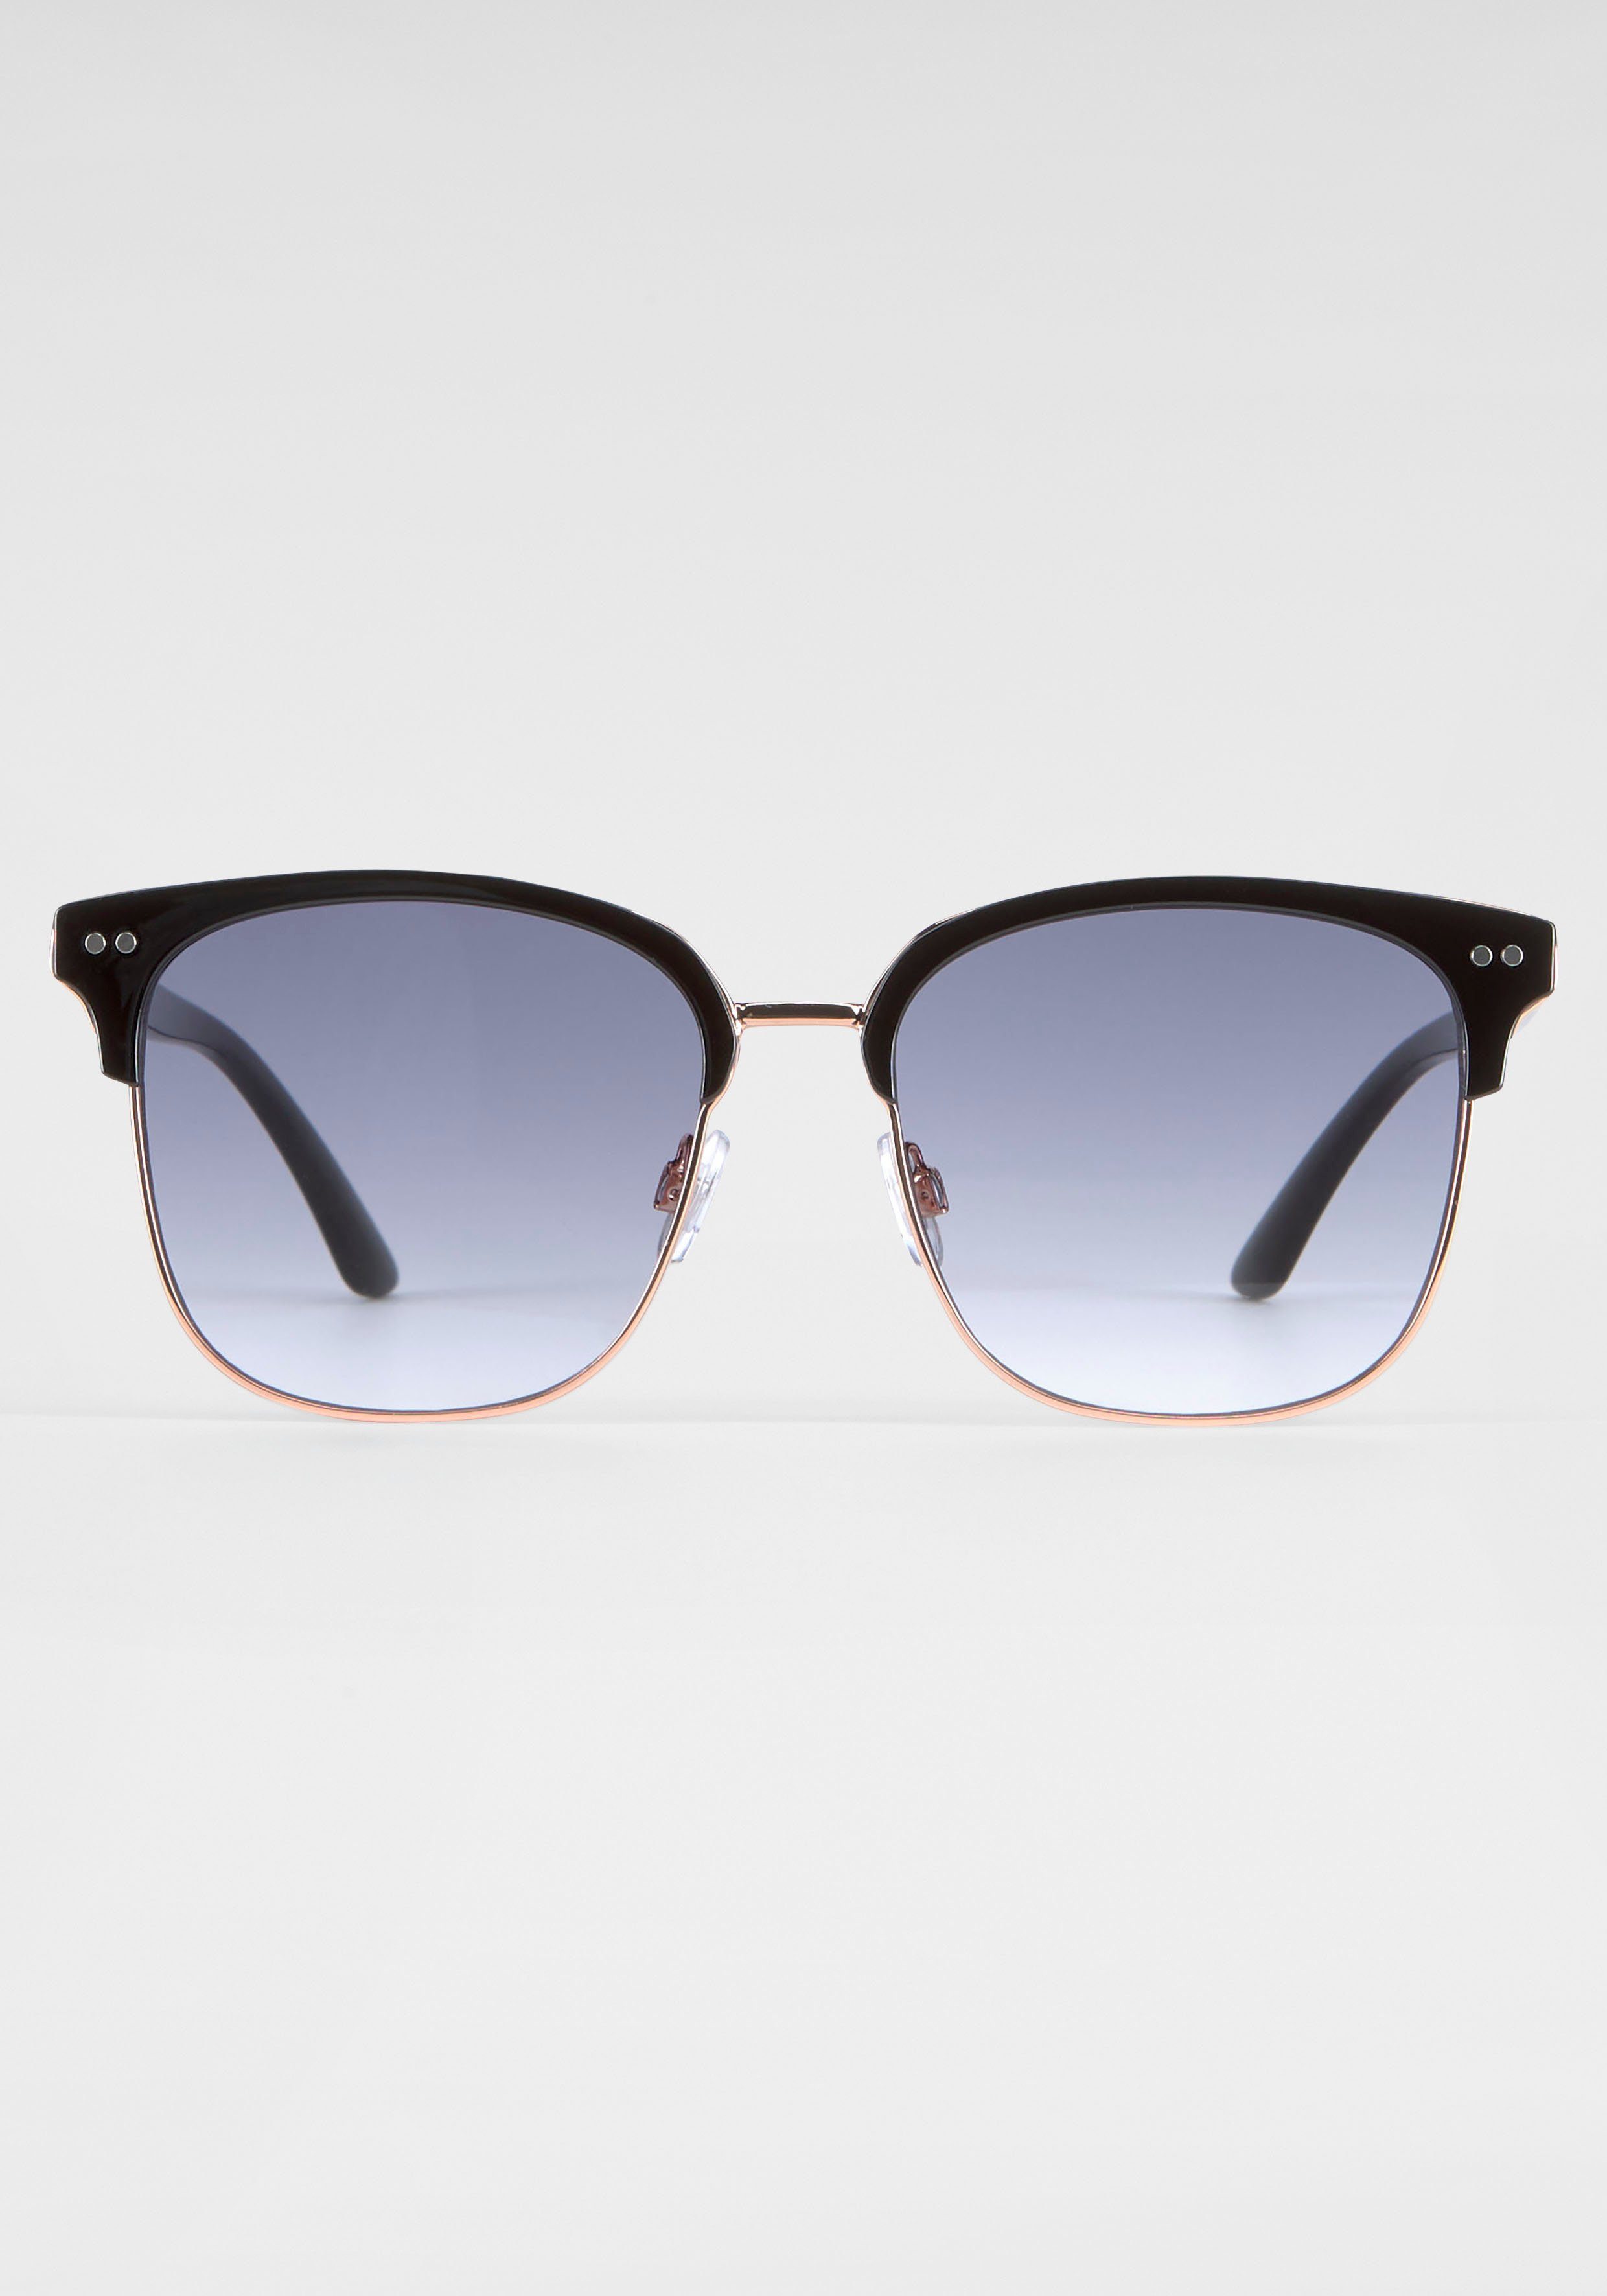 BLACK schwarz Gläsern BACK gebogenen Sonnenbrille IN mit Eyewear